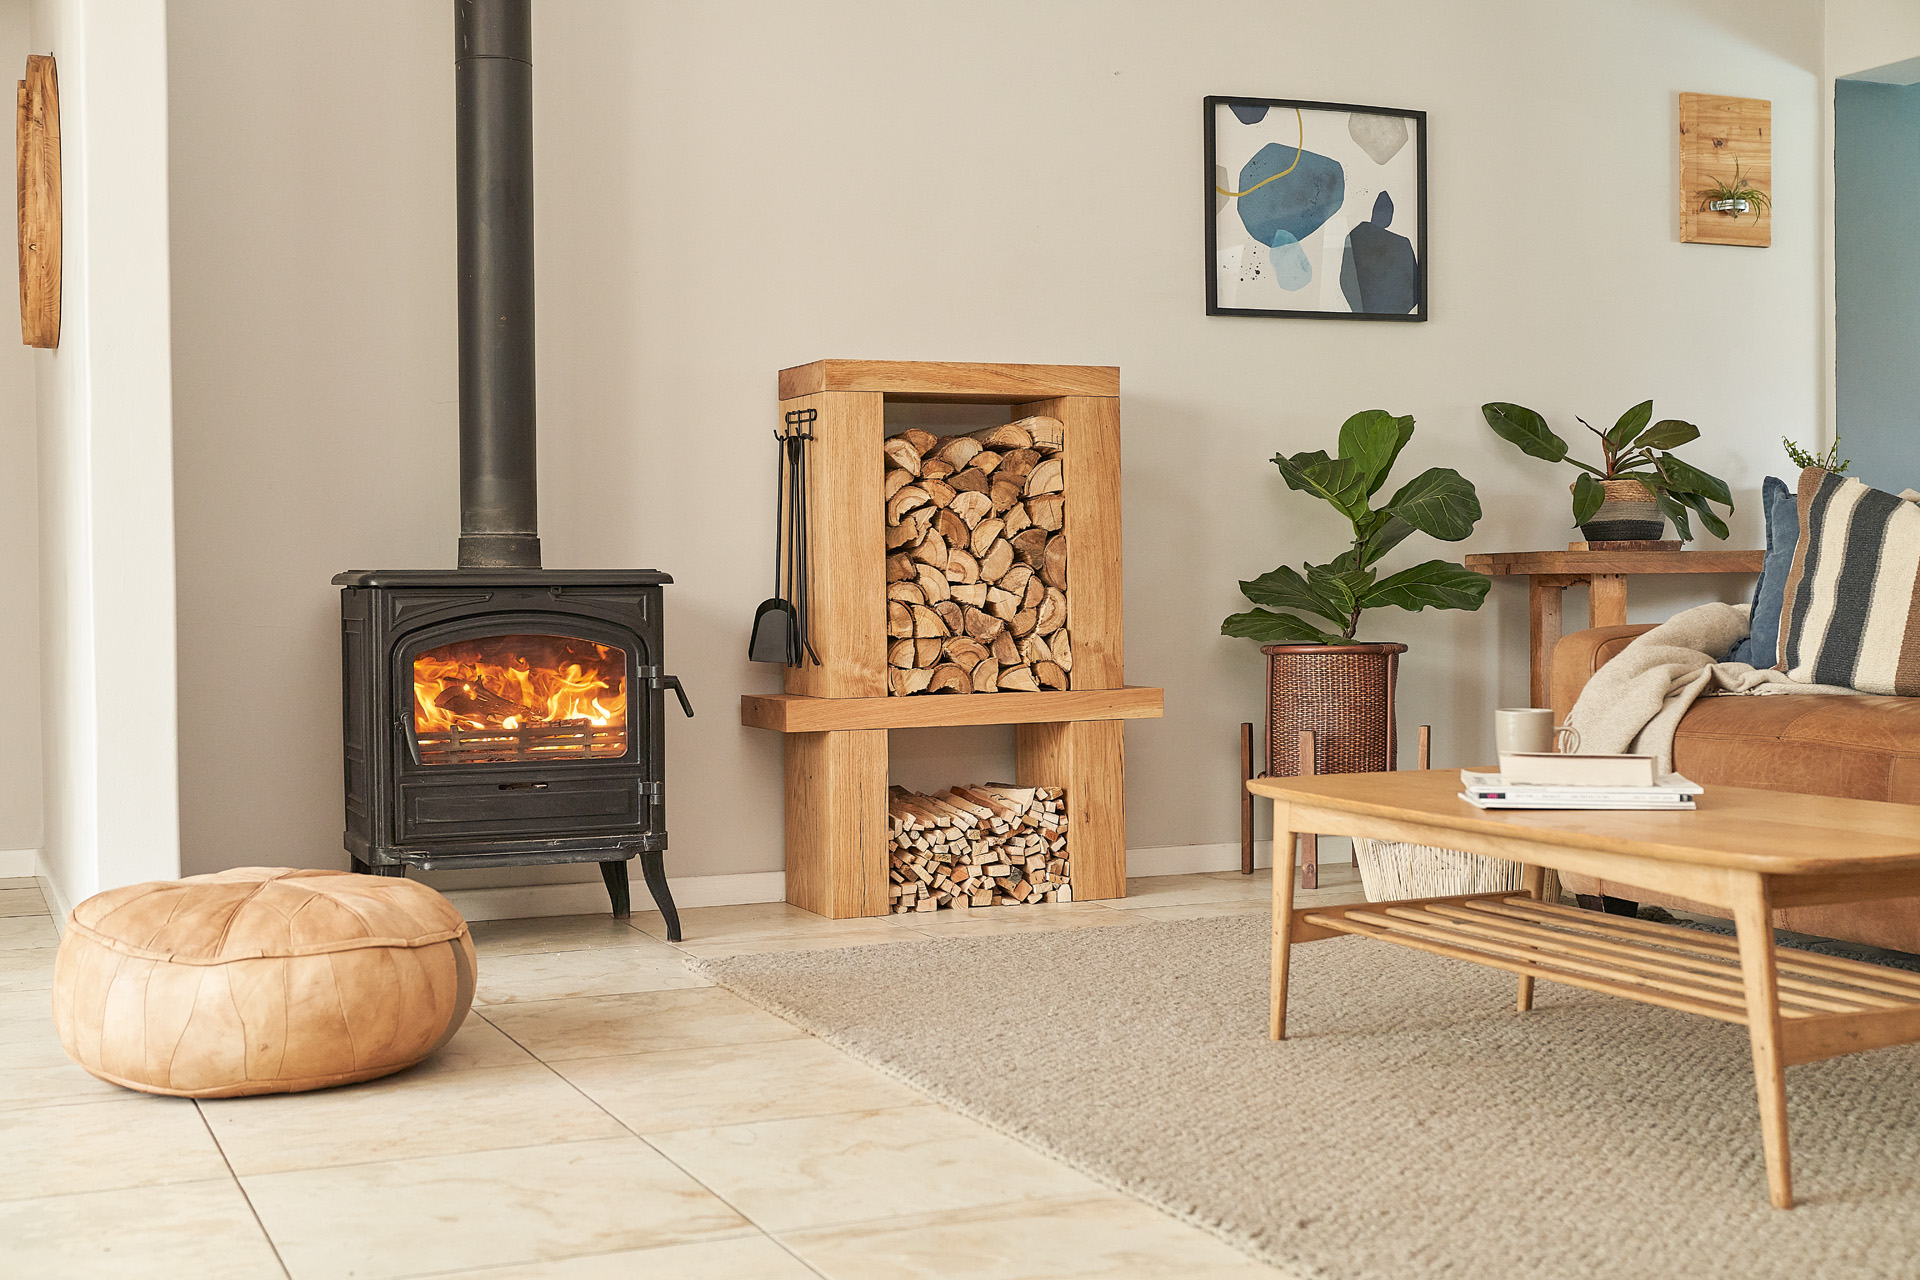 Intérieur meublé avec cheminée et meuble de rangement de bois de chauffage intérieur